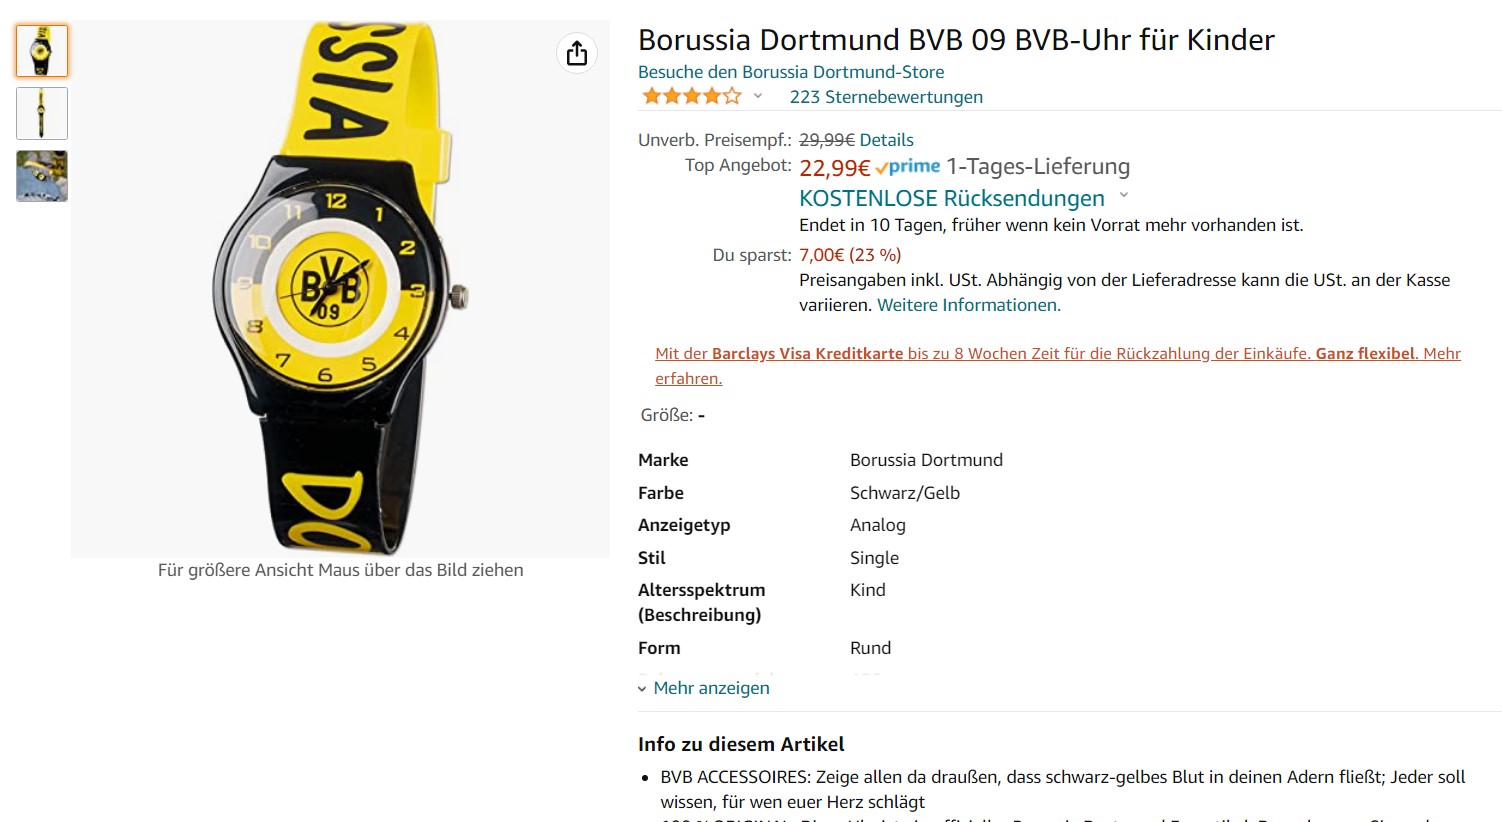 Borussia Dortmund, BVB, Black Friday, Angebote, Deals, Schnäppchen